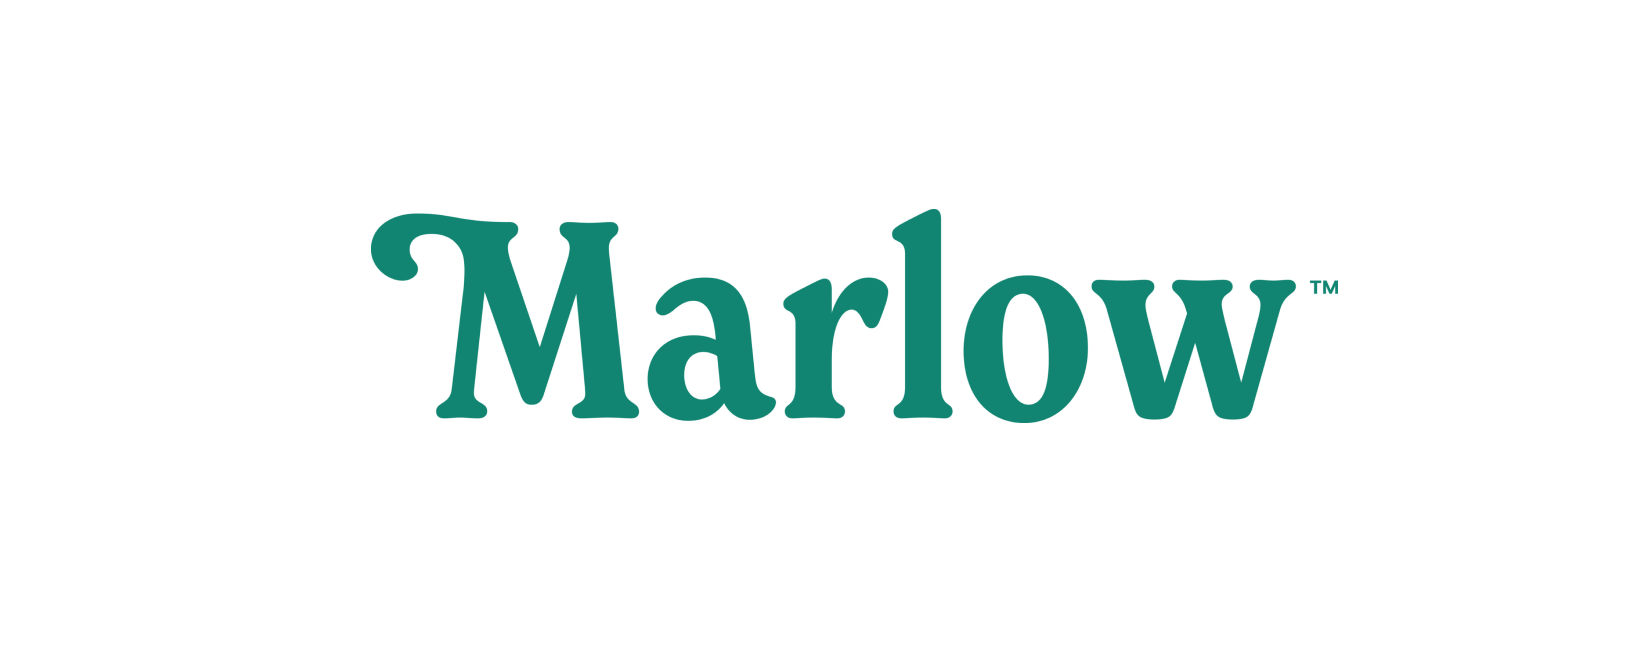 Marlow Discount Code 2022